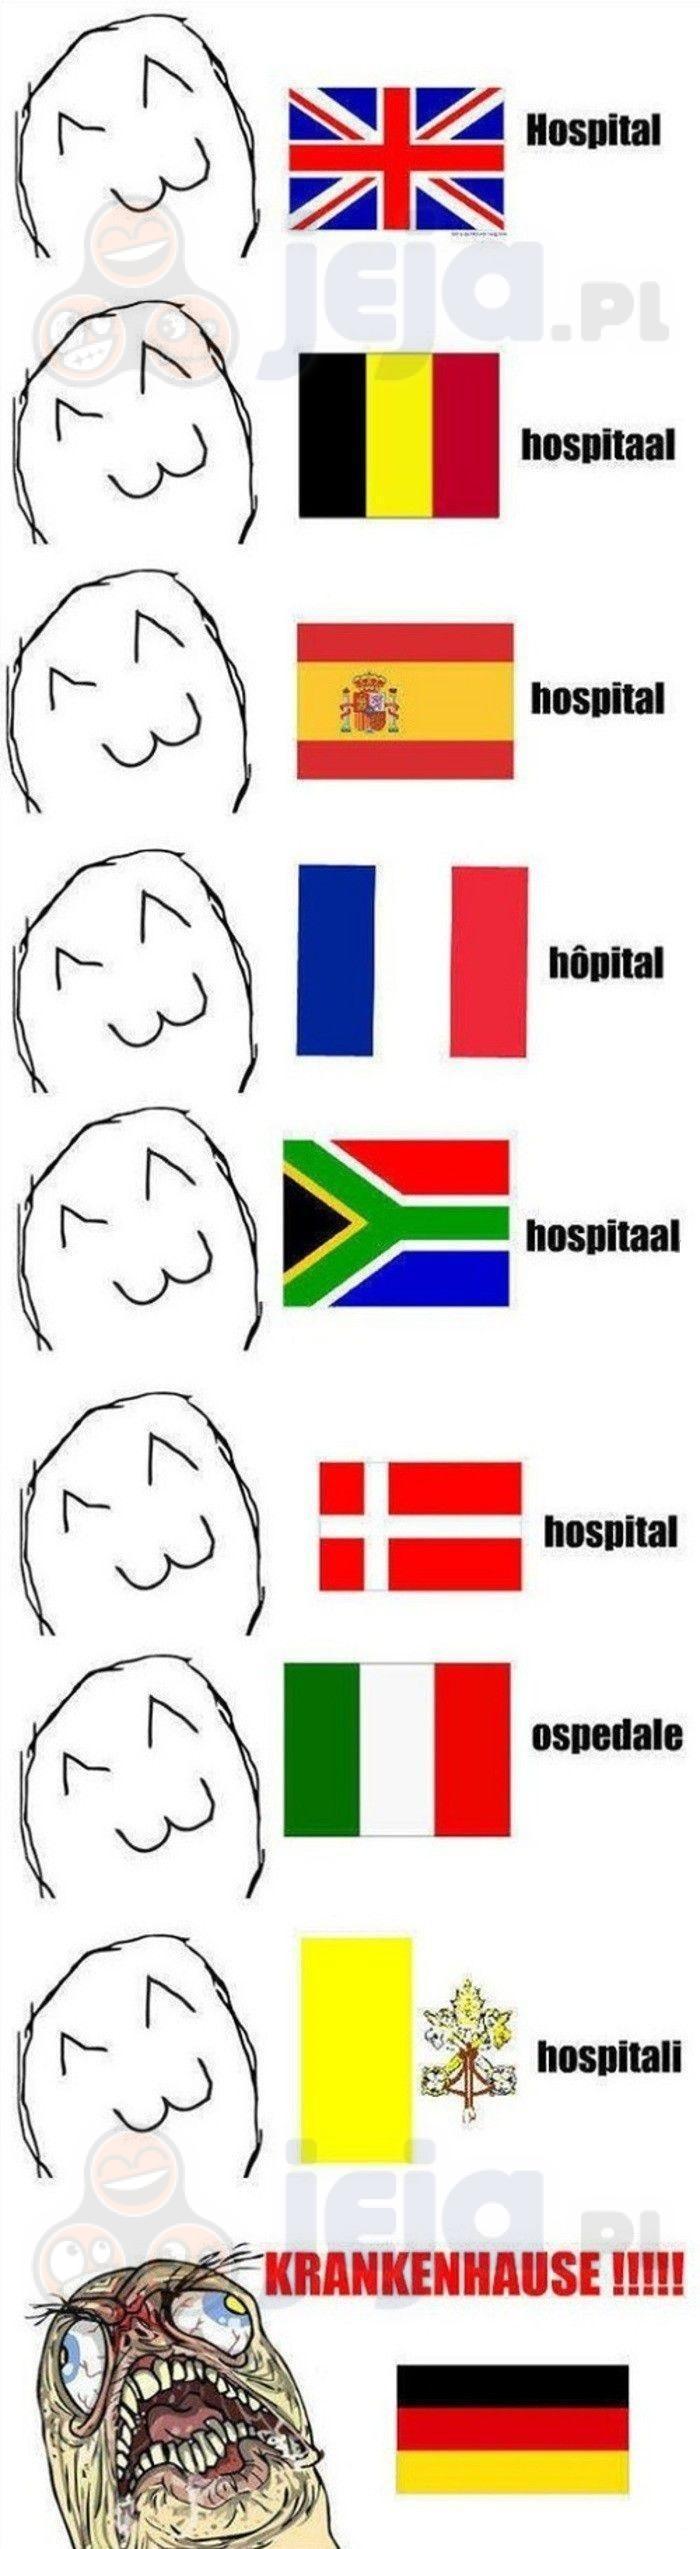 Szpital w różnych językach